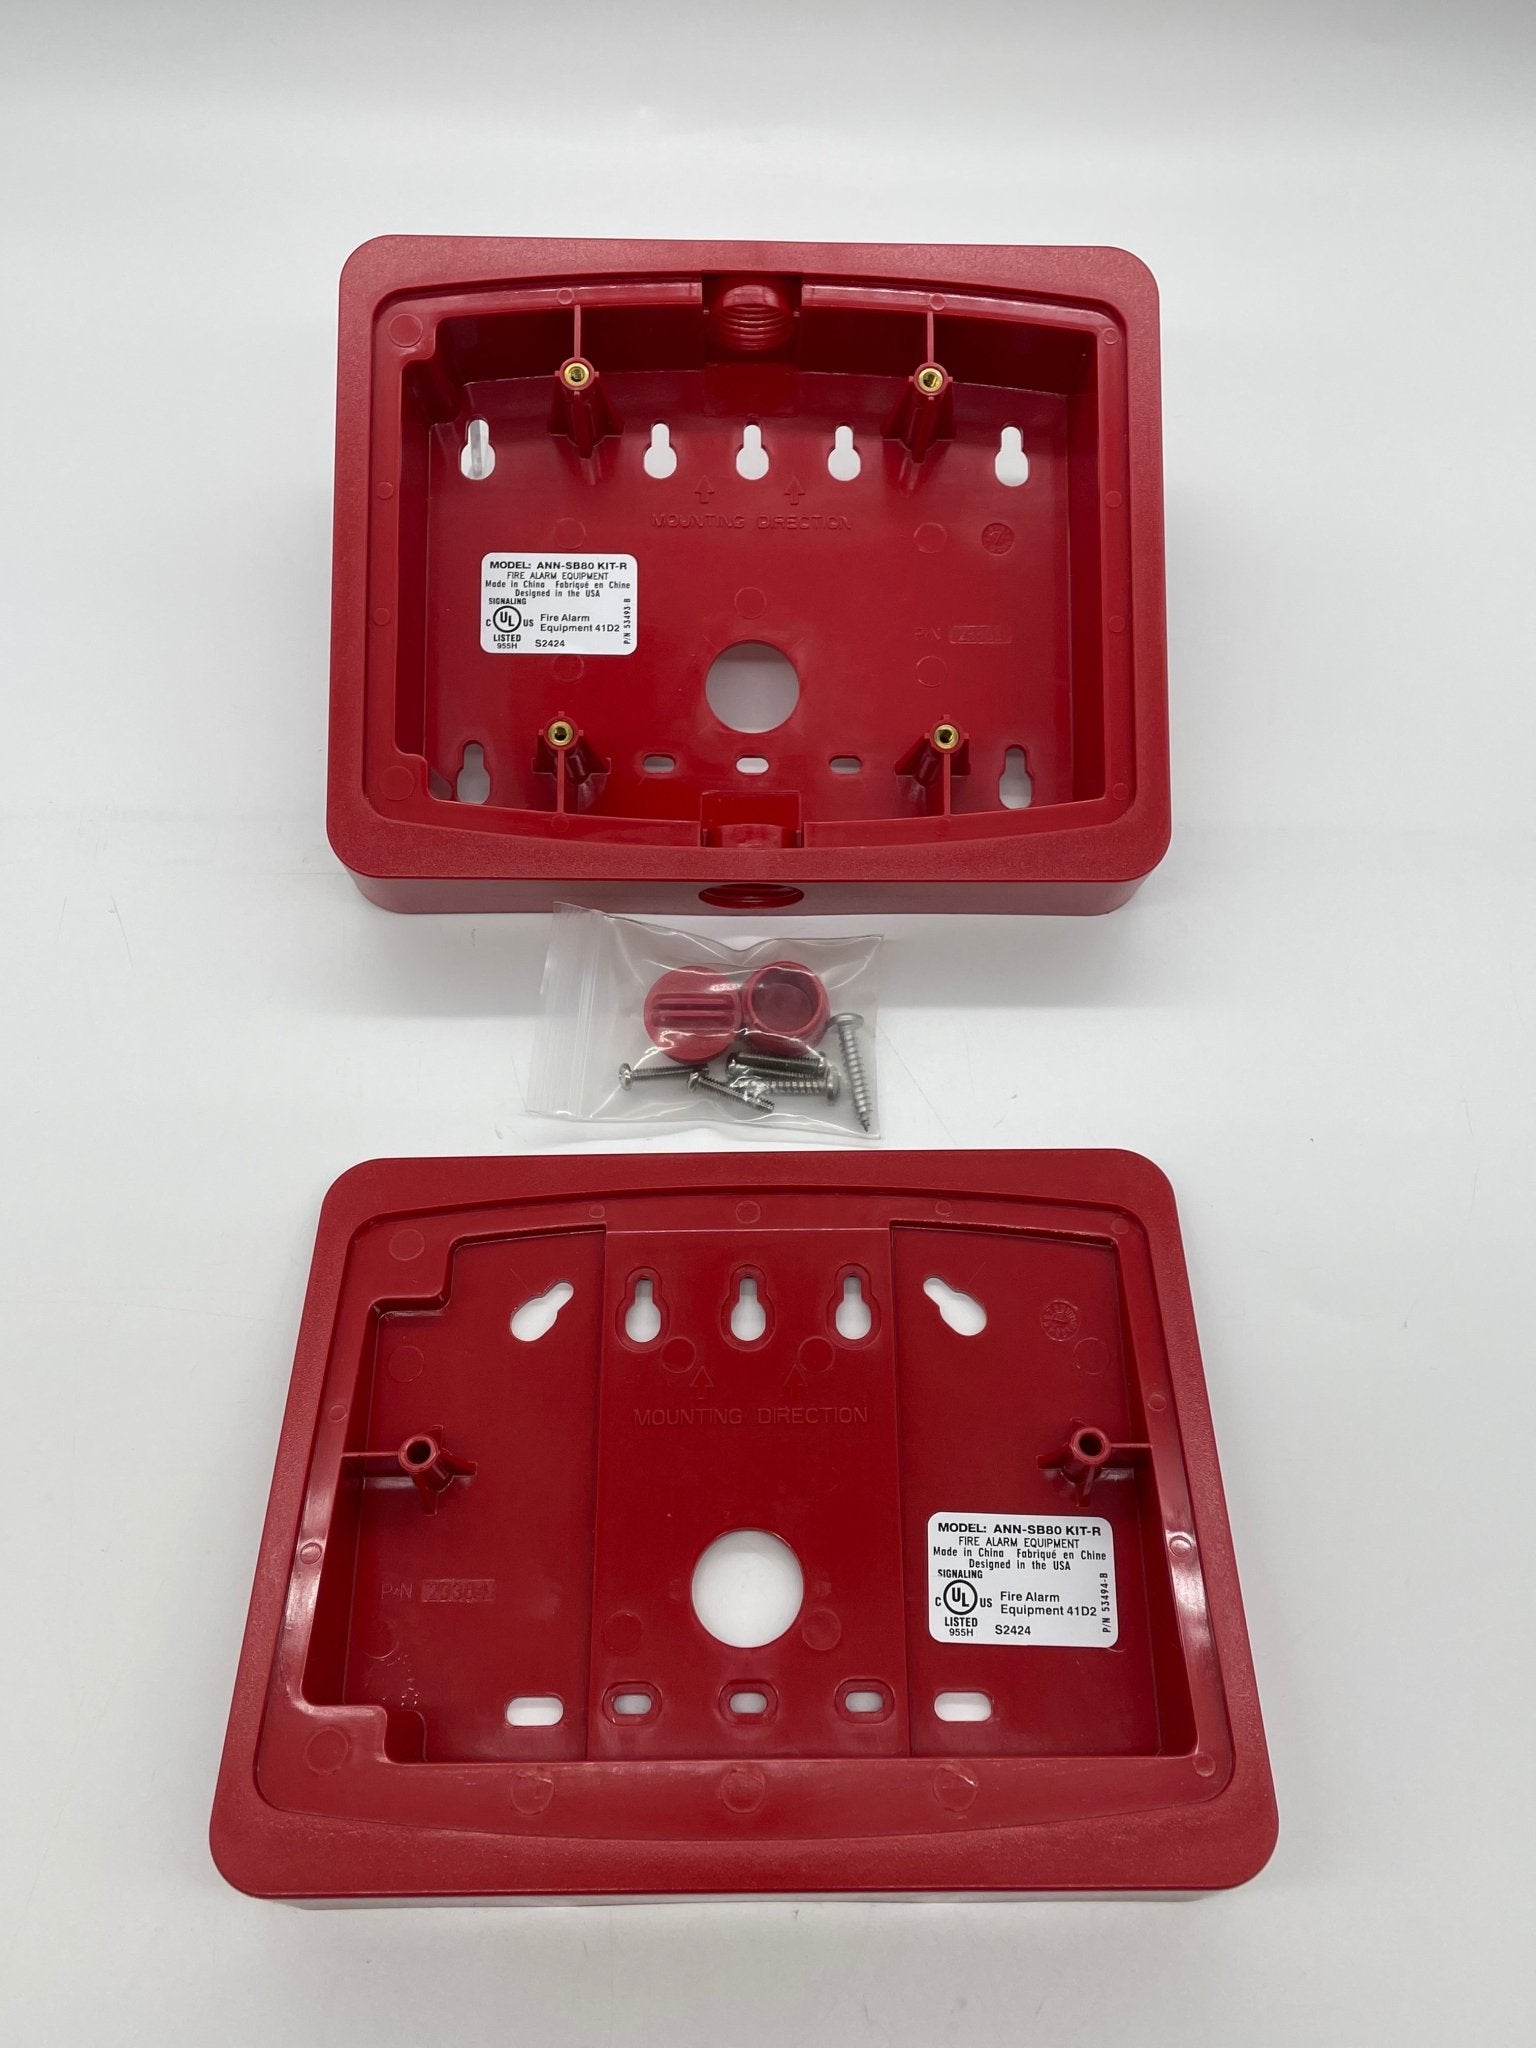 Firelite ANN-SB80KIT-R - The Fire Alarm Supplier